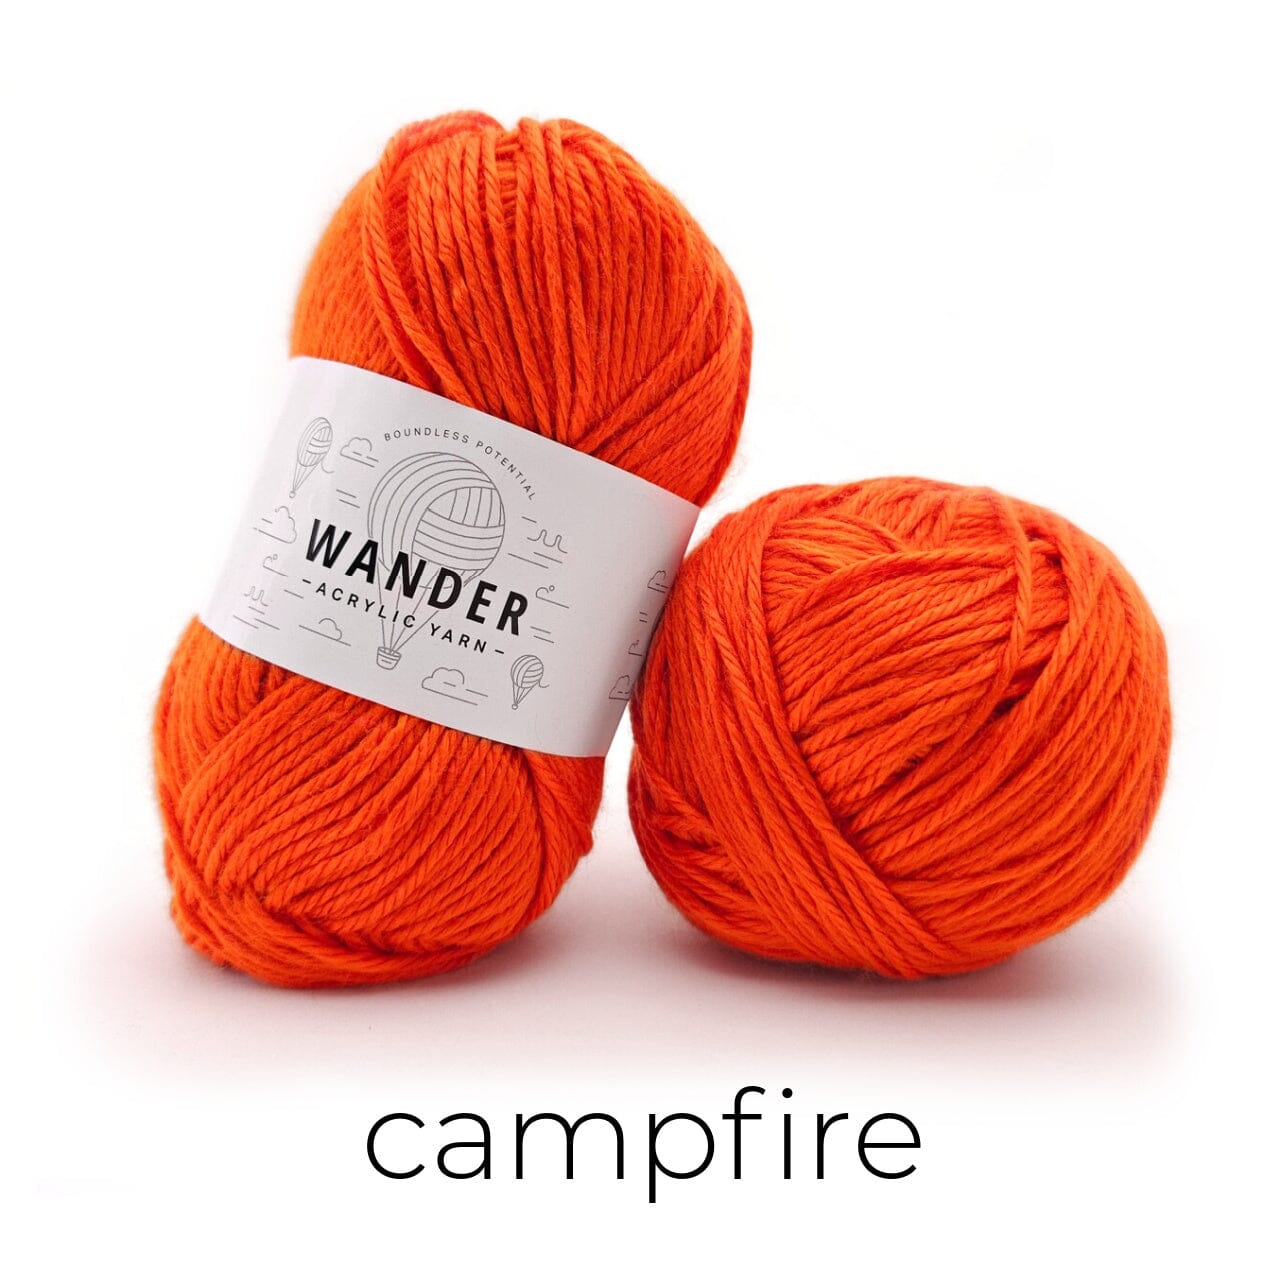 Wander Acrylic Yarn Yarn FurlsCrochet Campfire 